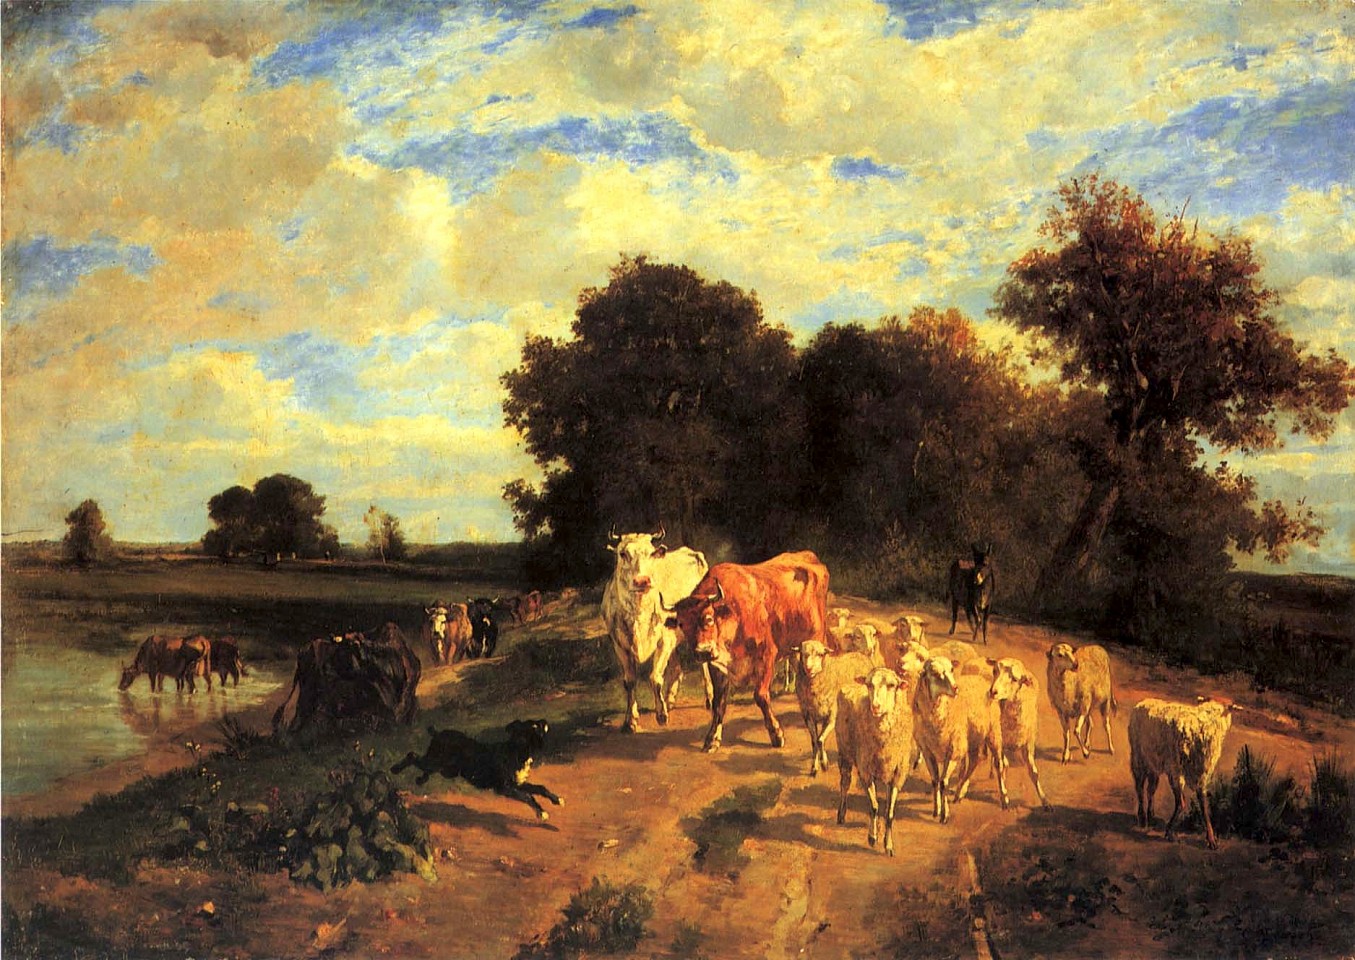 Constant Troyon, Le Troupeau au Bord de la Rivière, ca. 1850
Oil on canvas, 25 1/2 x 36 1/4 in. (64.8 x 92.1 cm)
TRO-004-PA
$80,000